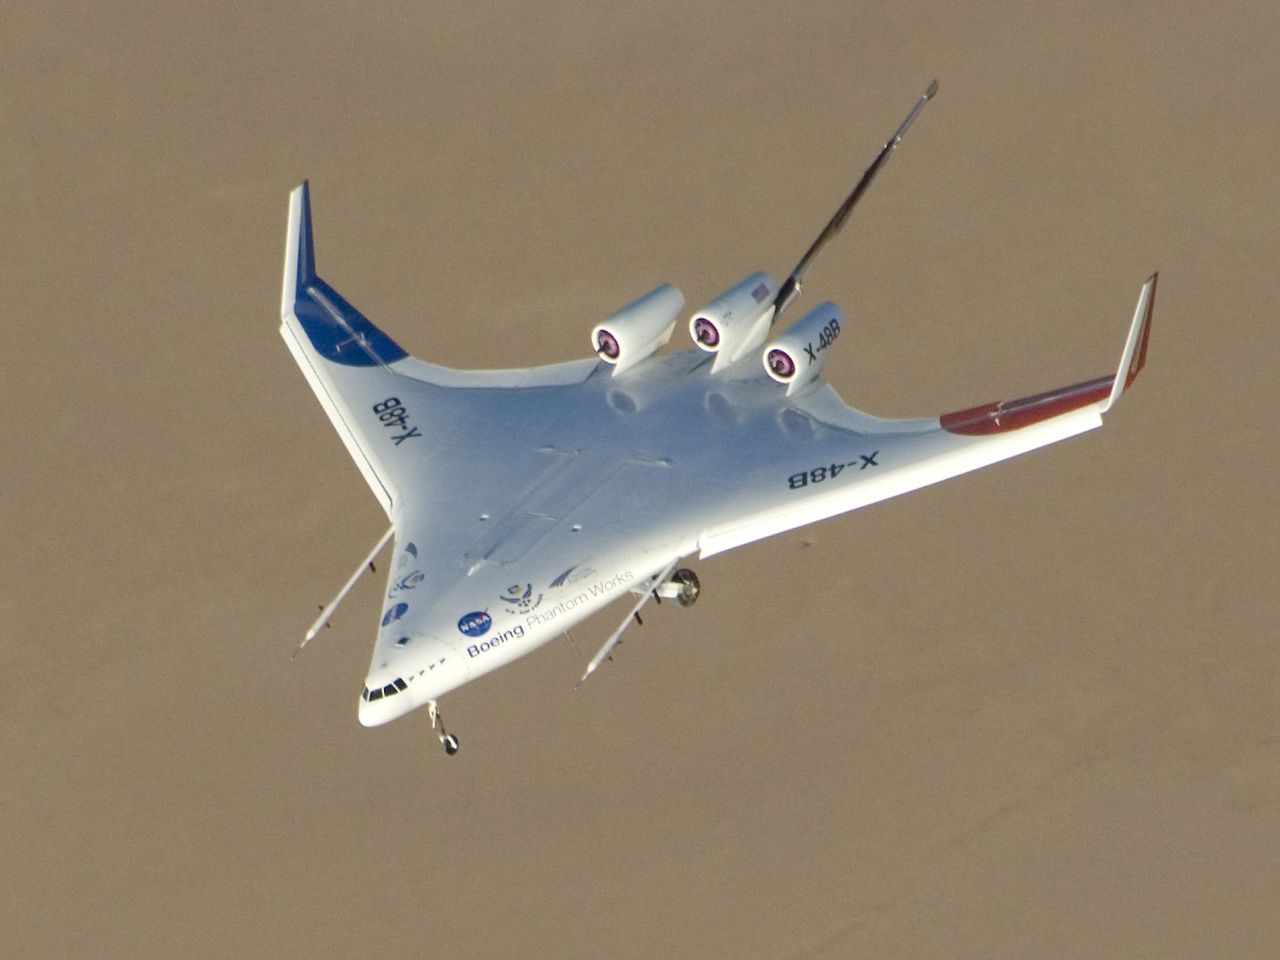 NASA X-48 aircraft